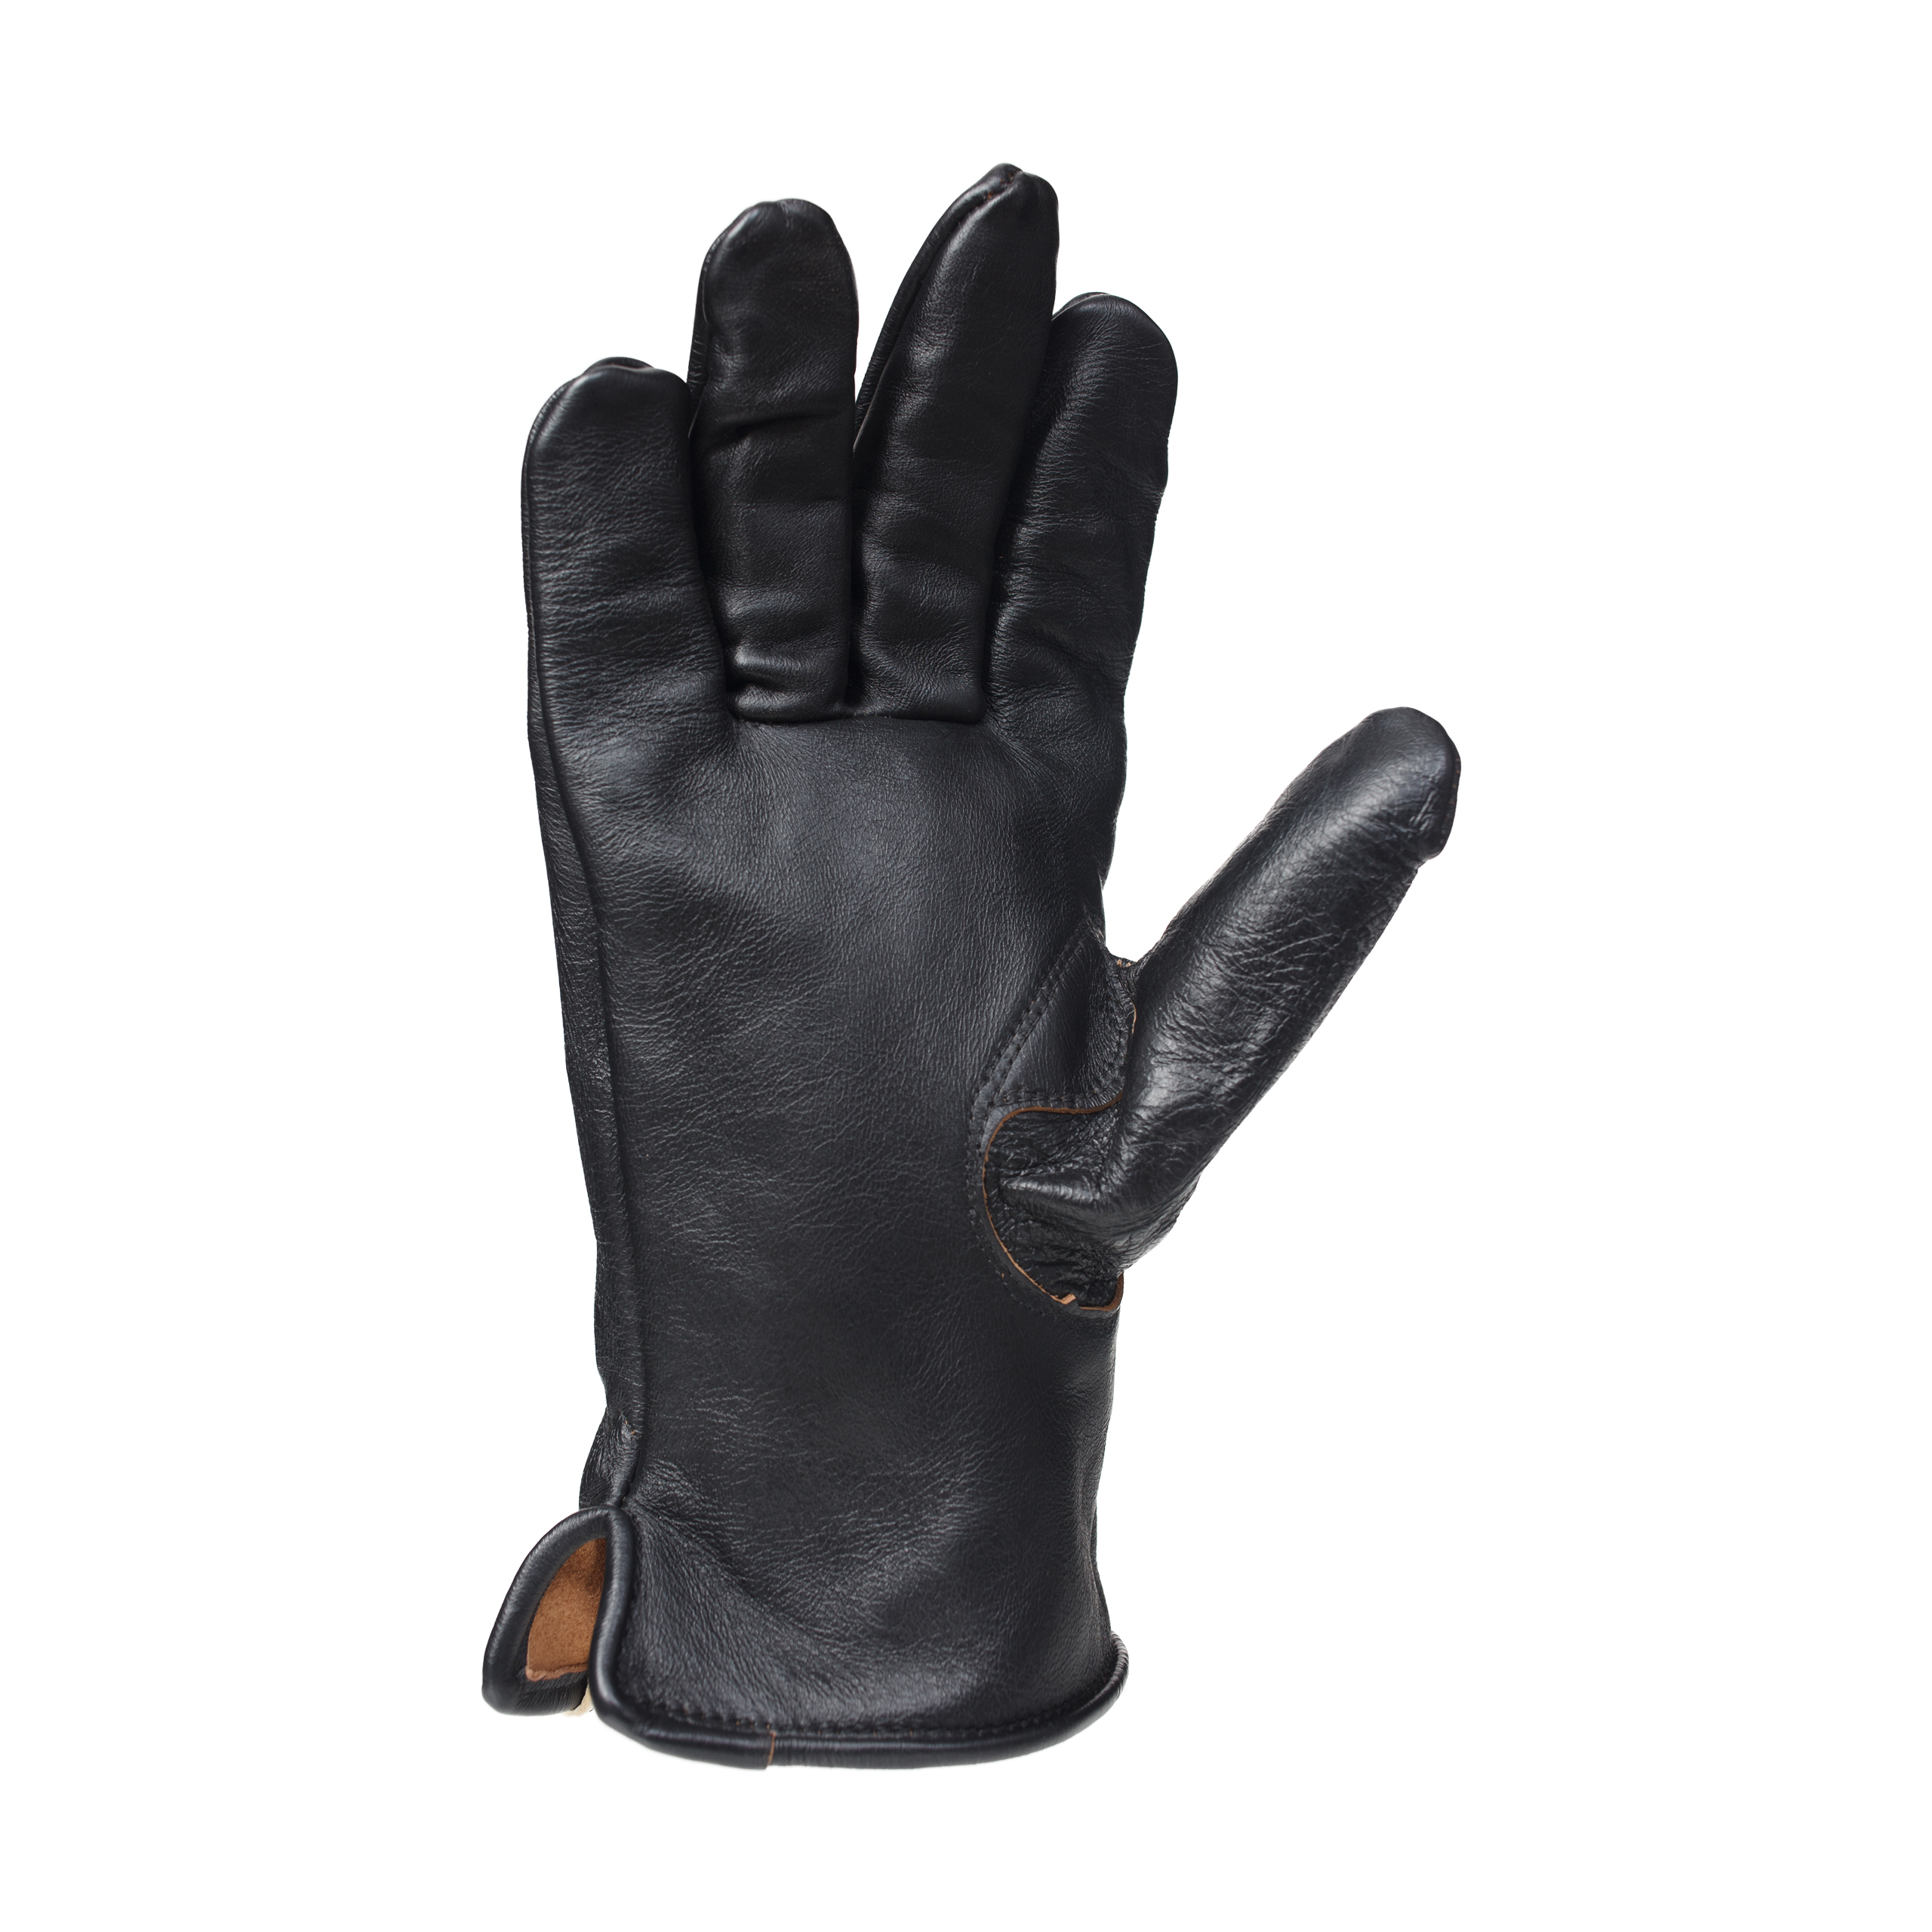 Кожаные перчатки с контрастными швами visvim 0124103003008, размер S/M;M/L - фото 3